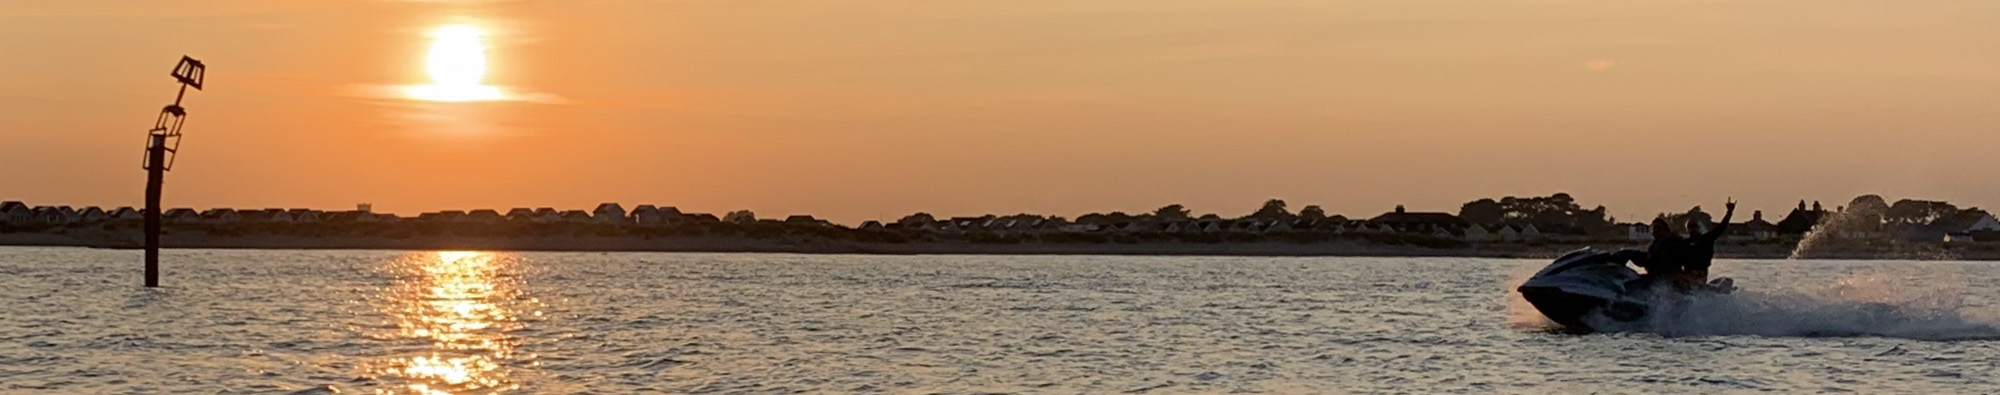 Jetskifix sandbanks sunset